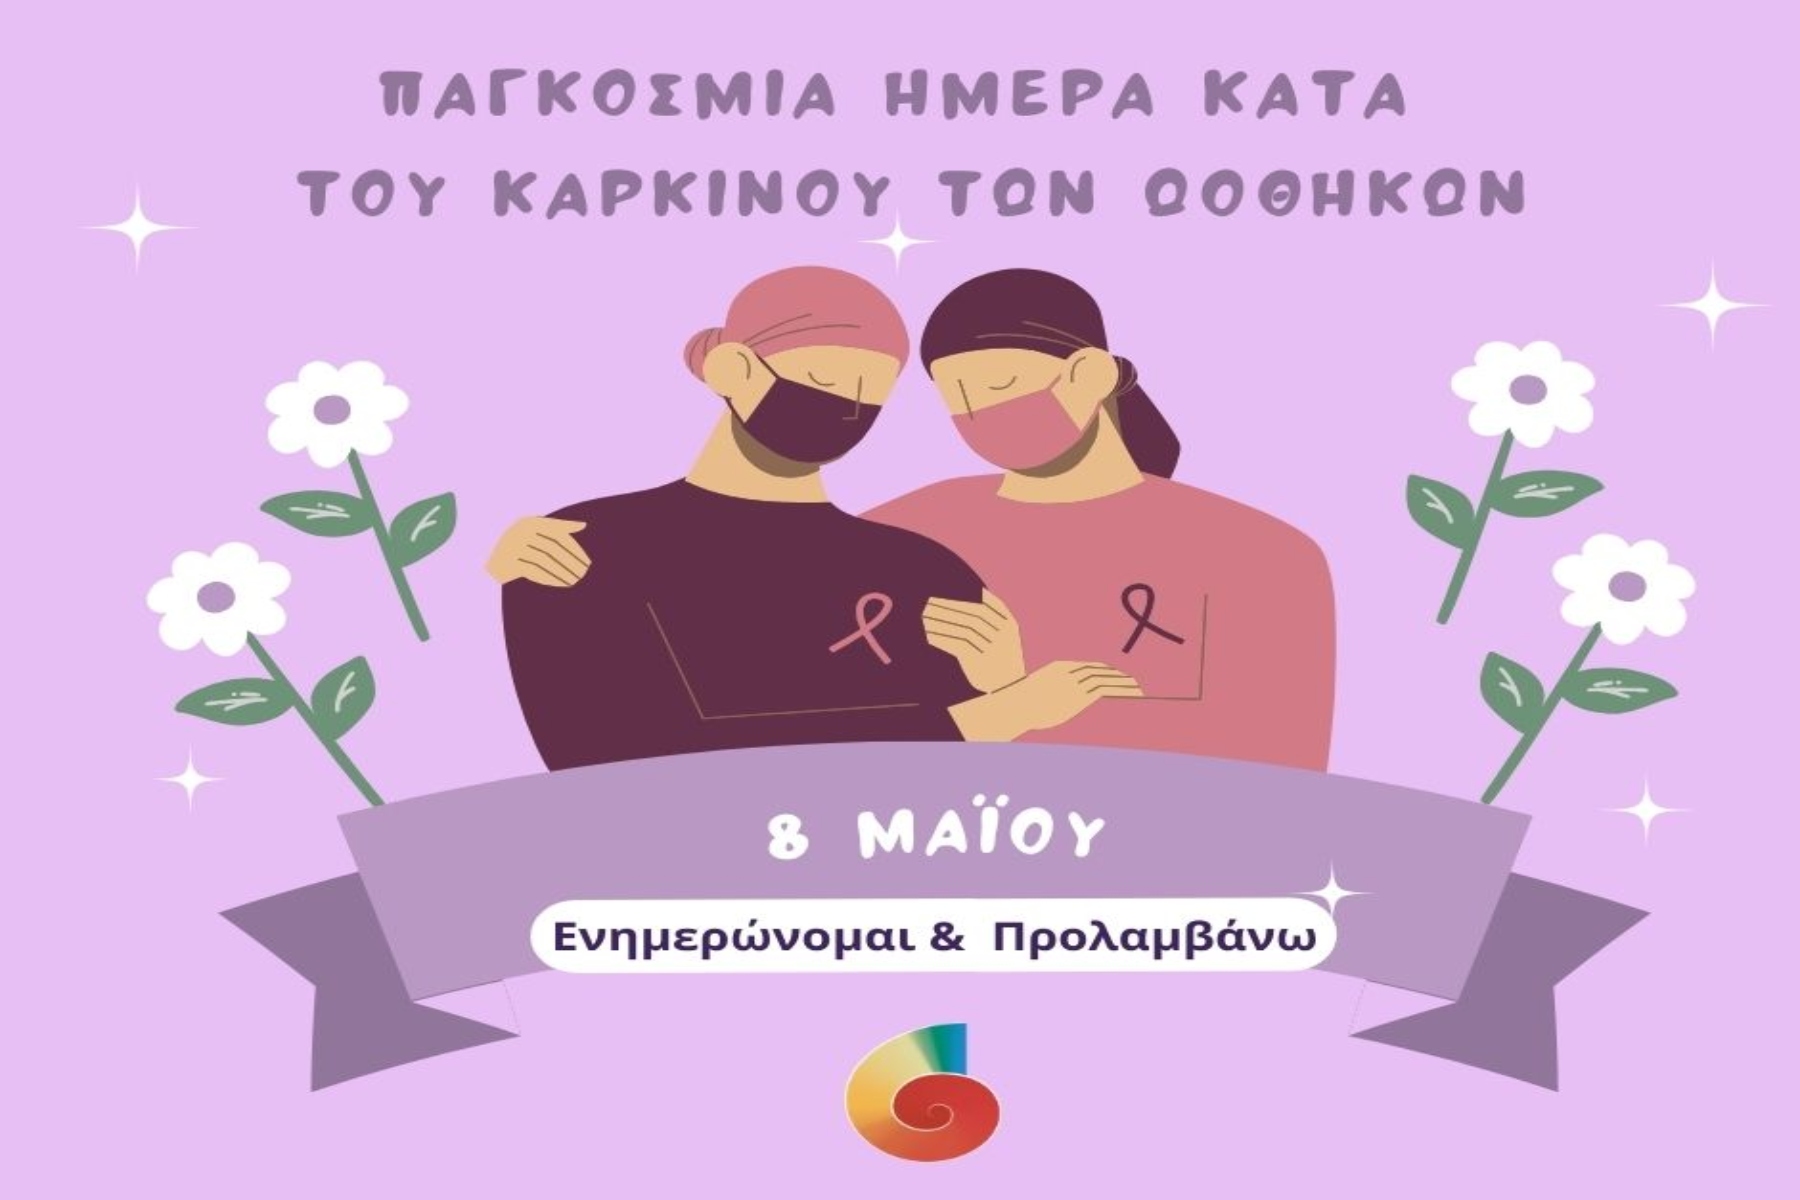 8 Μαΐου: Παγκόσμια Ημέρα κατά του Καρκίνου των Ωοθηκών